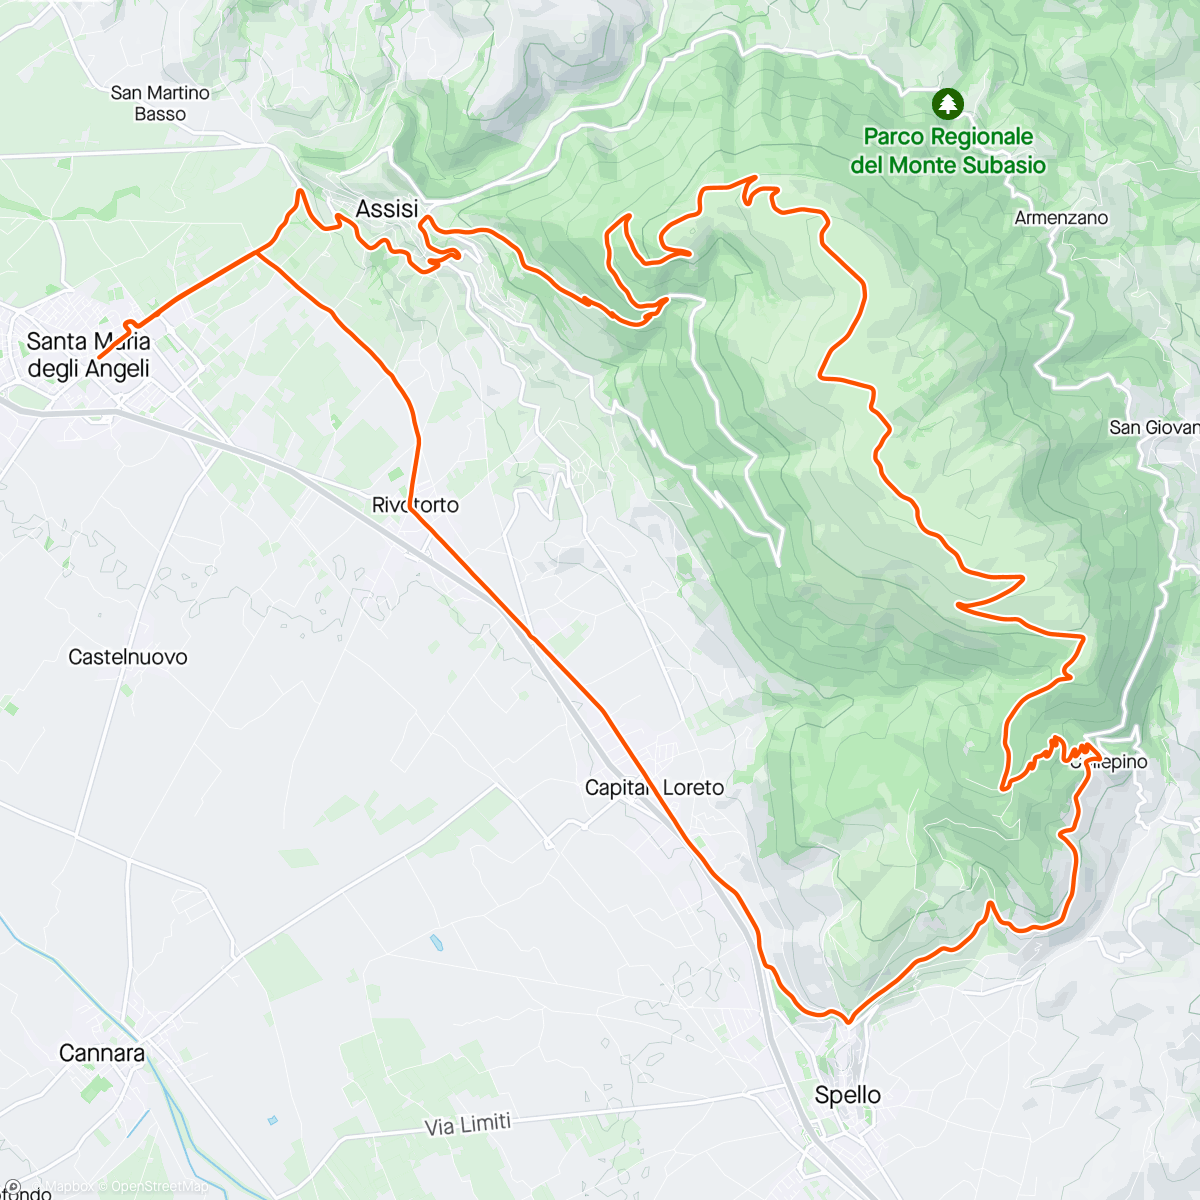 「Assisi. Monte Subasio. Spello」活動的地圖